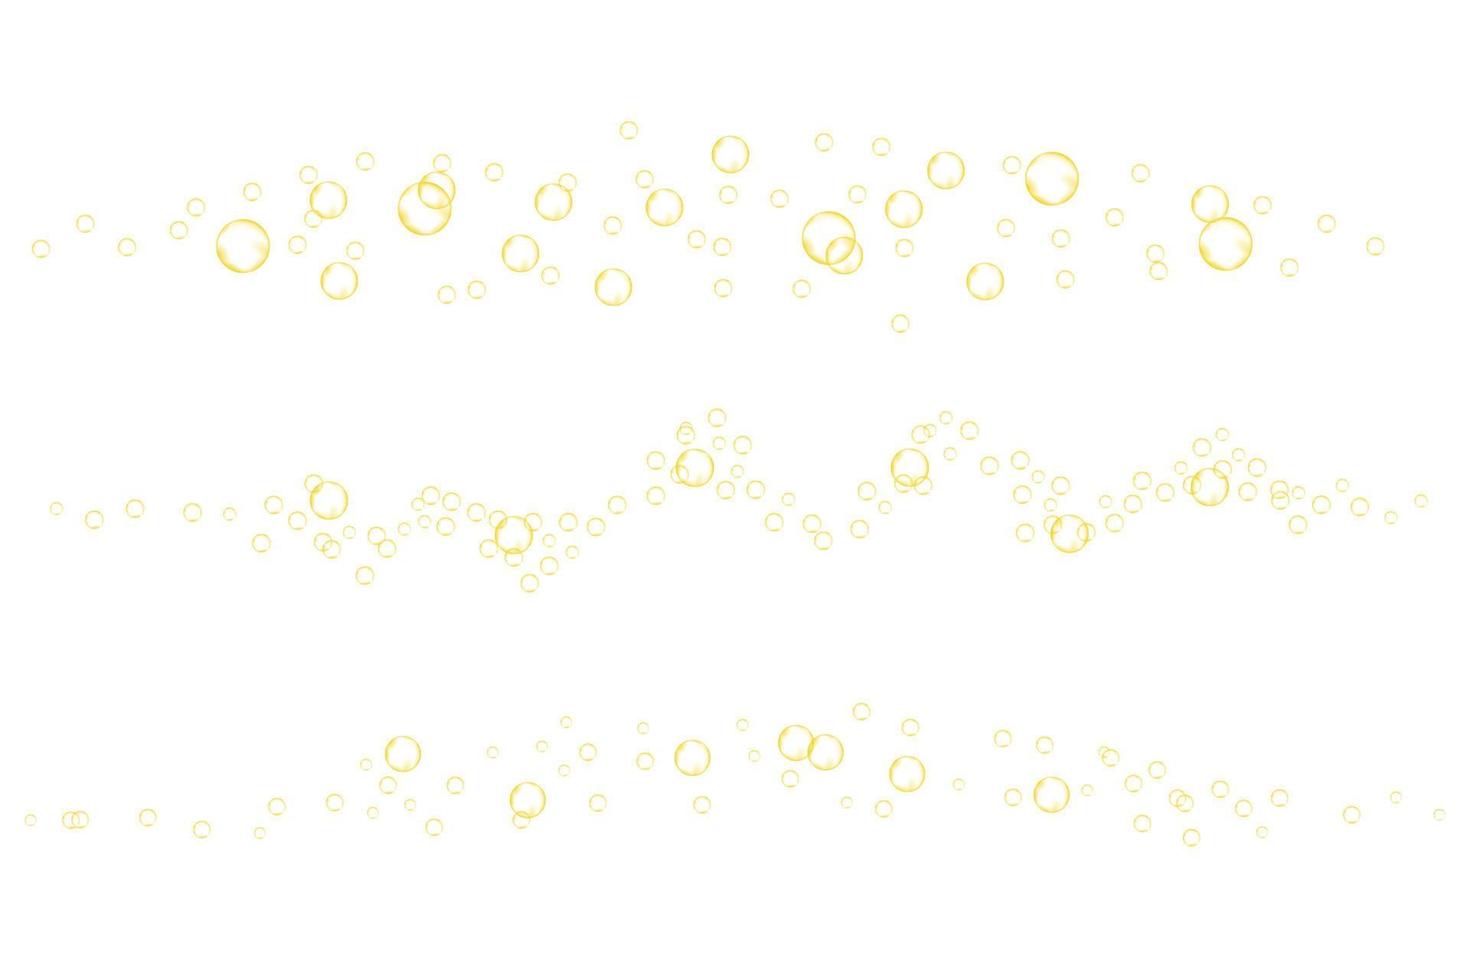 bolhas efervescentes douradas de bebida carbonatada, refrigerante, cerveja, champanhe ou vinho. fluxo de gás efervescente amarelo. vetor textura realista